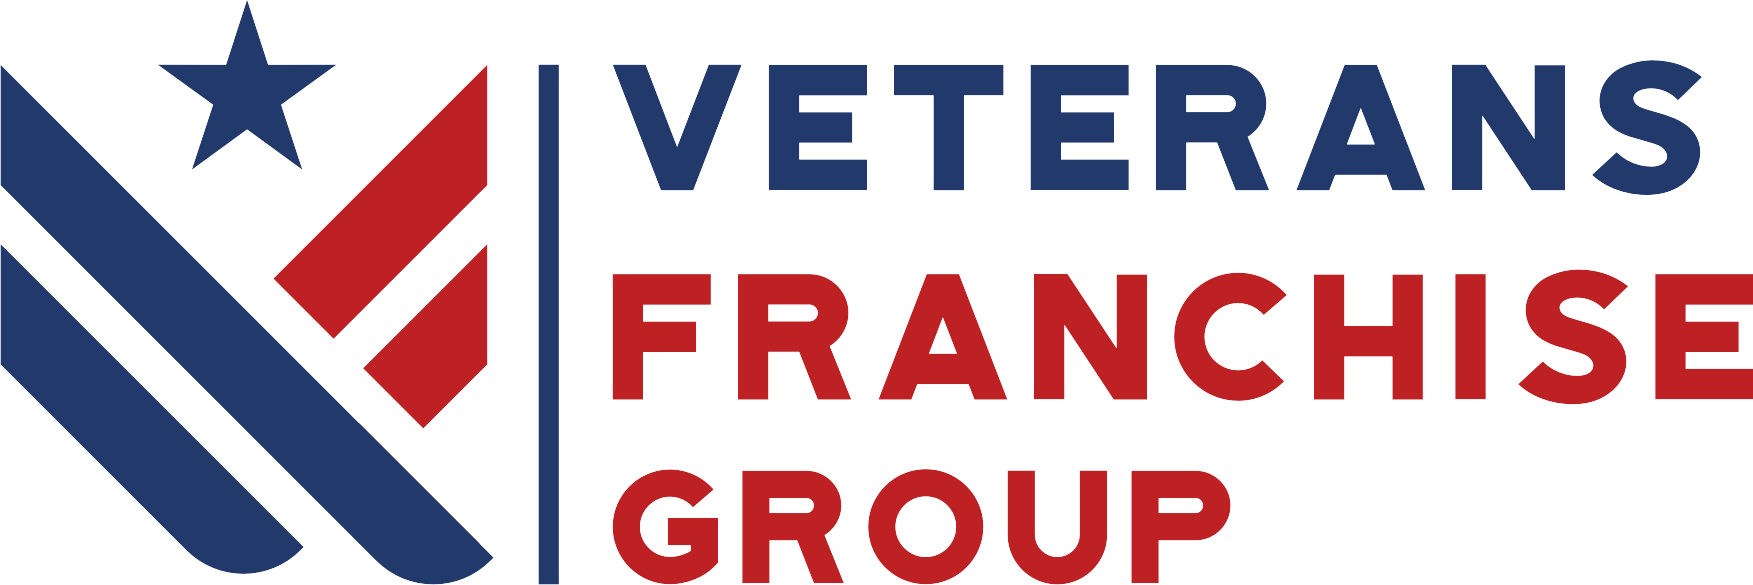 Veterans Franchise Group Logo